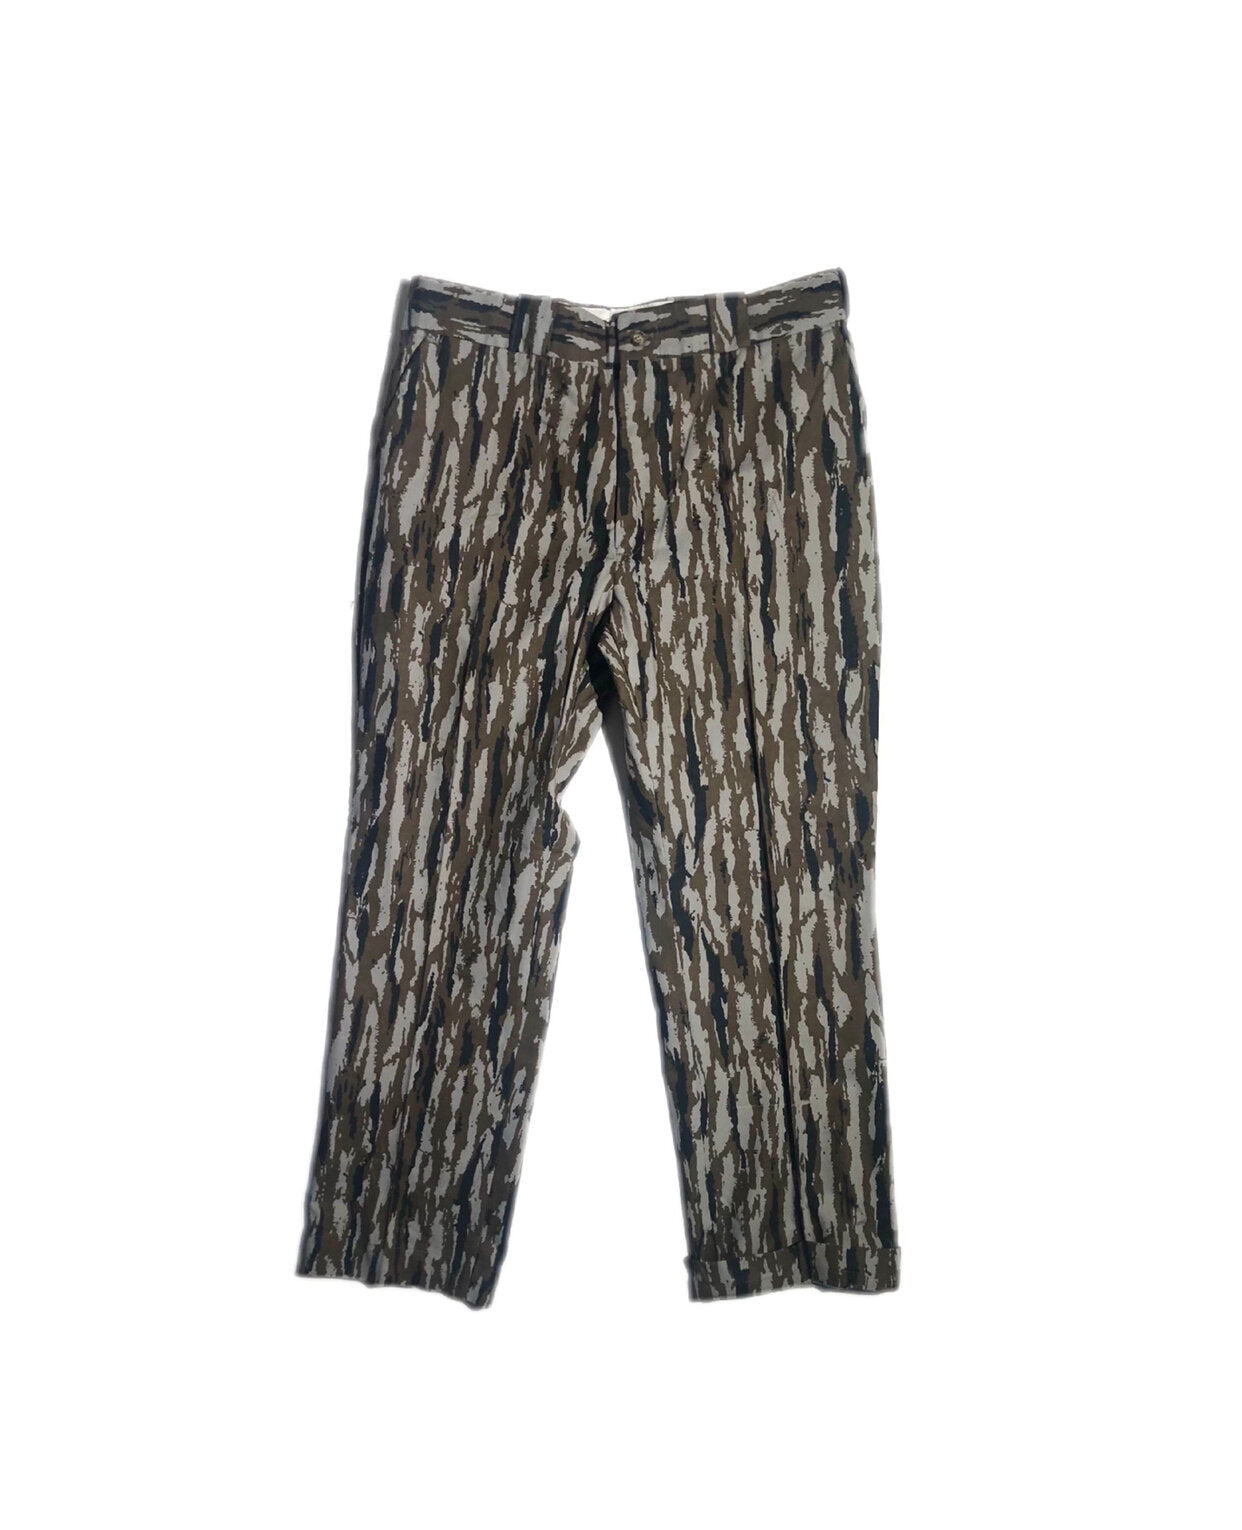 Vintage 1970s Pleated Pants (Scoville Zipper)